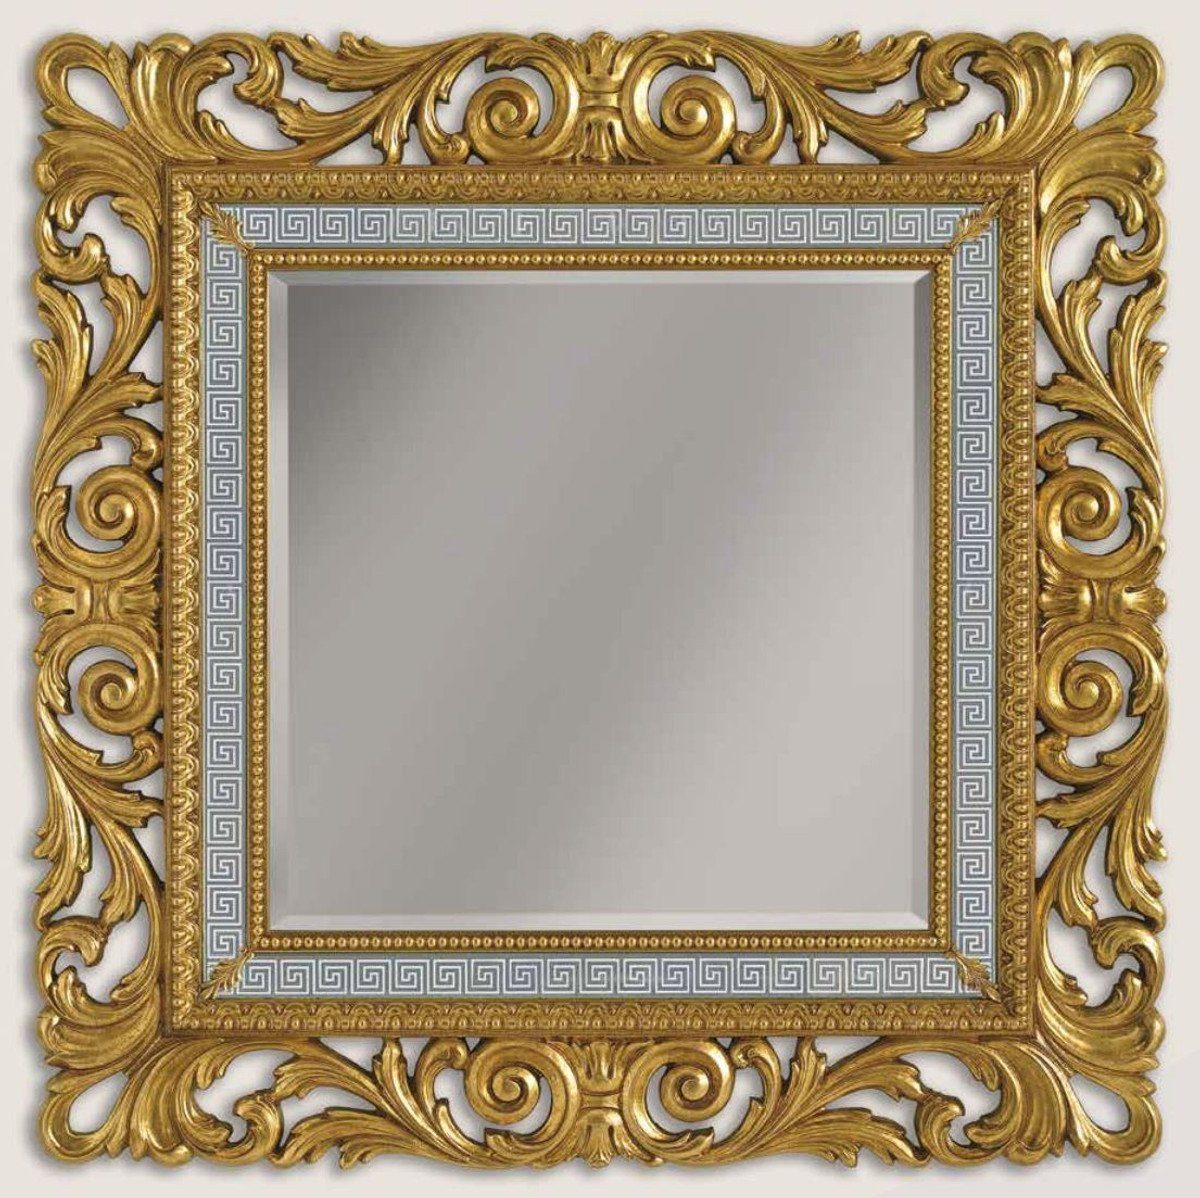 Barockspiegel - Gold Barock Spiegel Barockstil - Luxus / Padrino Italy in Weiß Qualität - Wandspiegel im / Möbel Luxus - Casa Barock Handgefertigter Grau Made